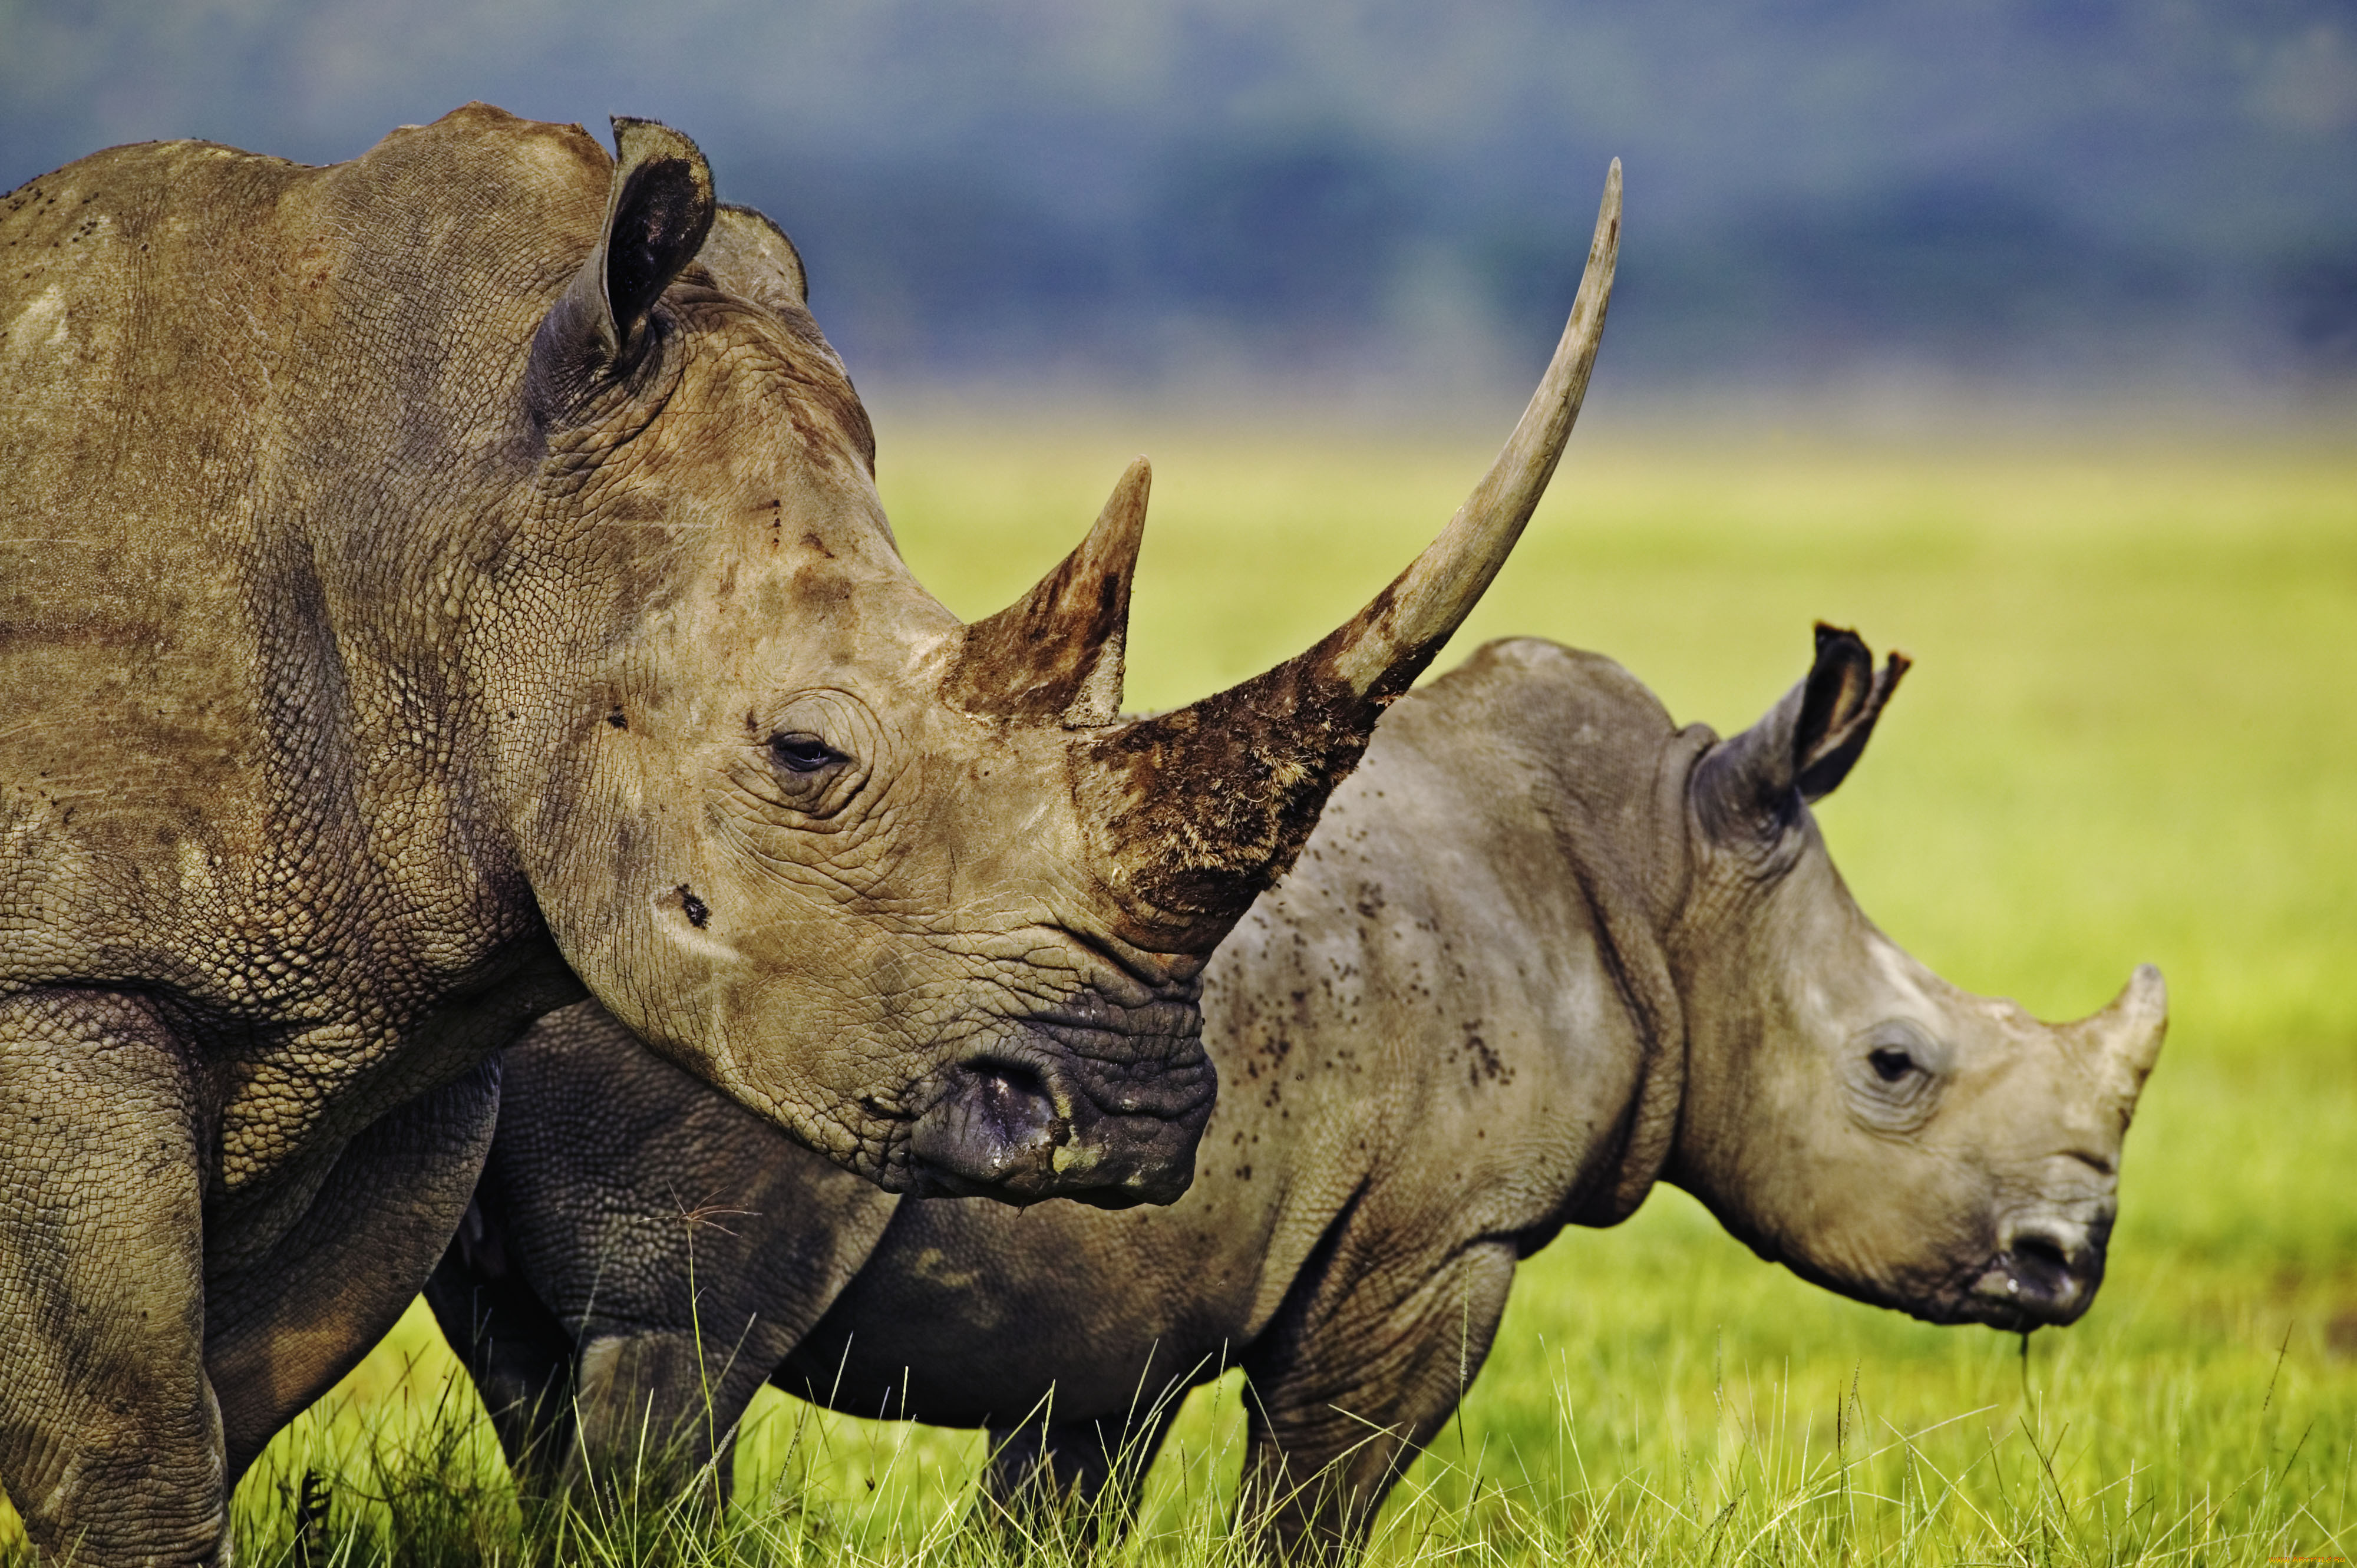 Animals images. Двурогий носорог Африка. Носорог в саванне. Животные Африки саванны Африки носорог. Мир животных.